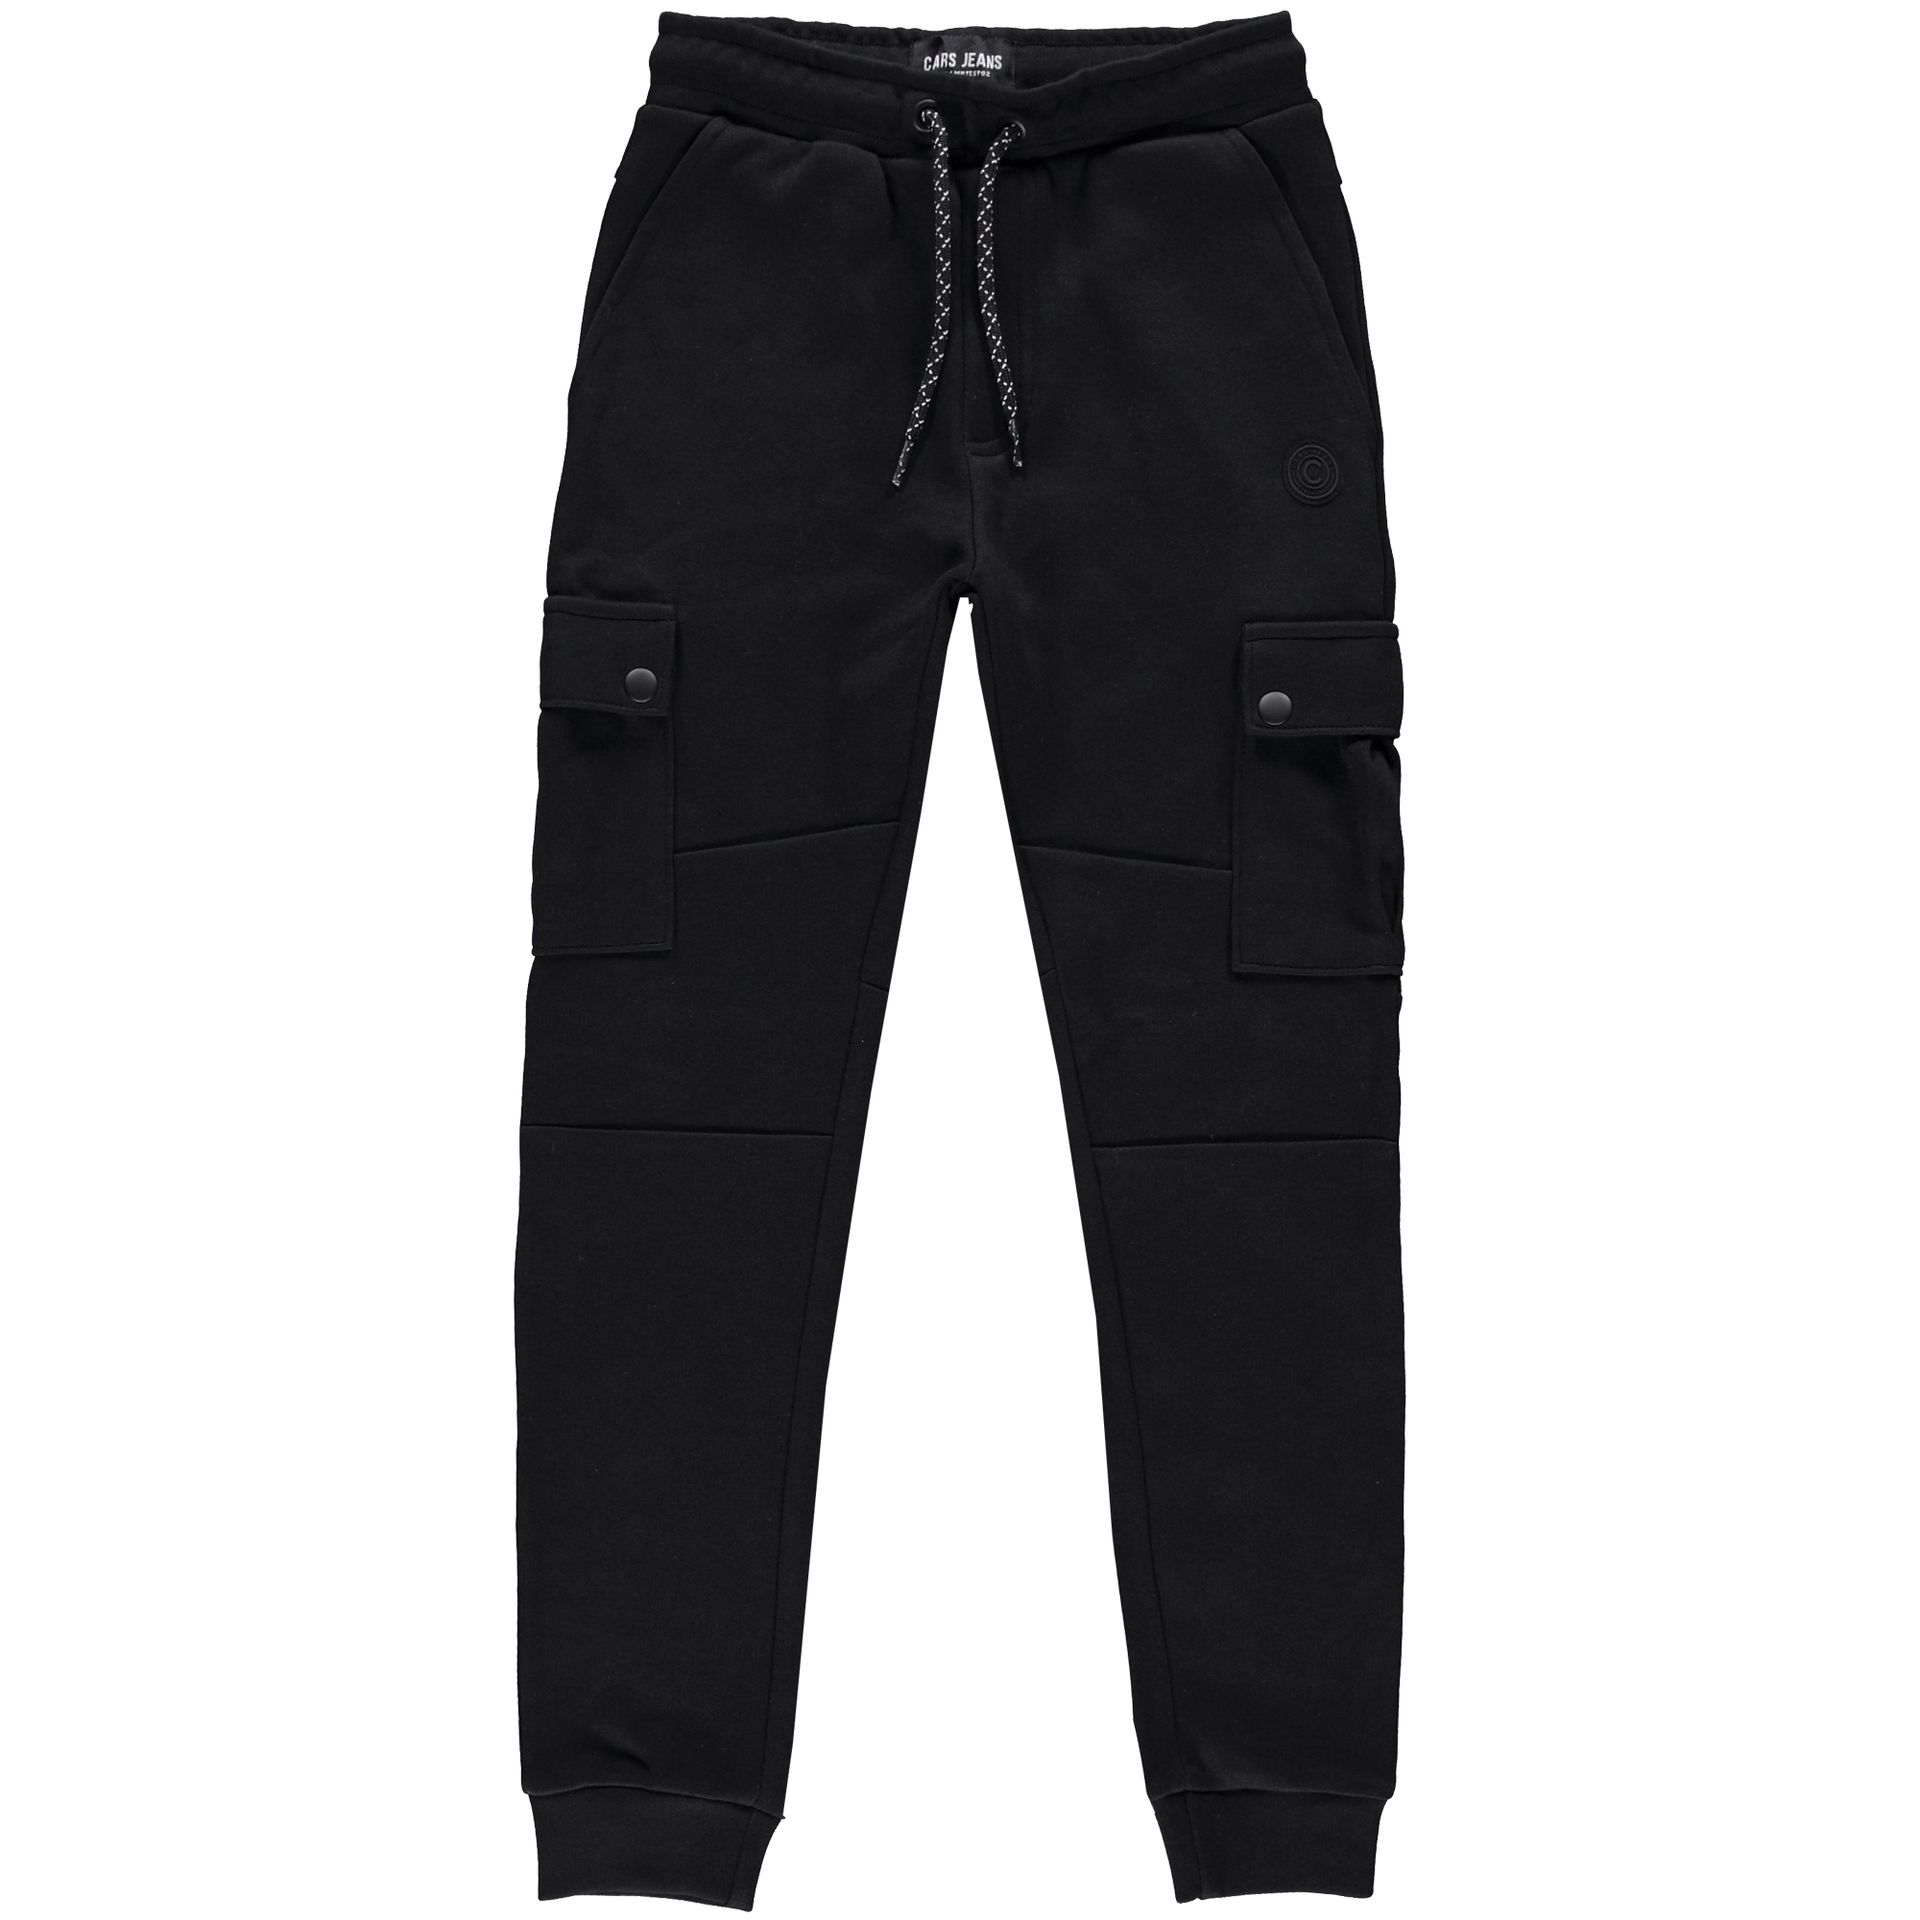 Cars jeans Pants Dushane Jr. 01 black 00105609-EKA03000200000001